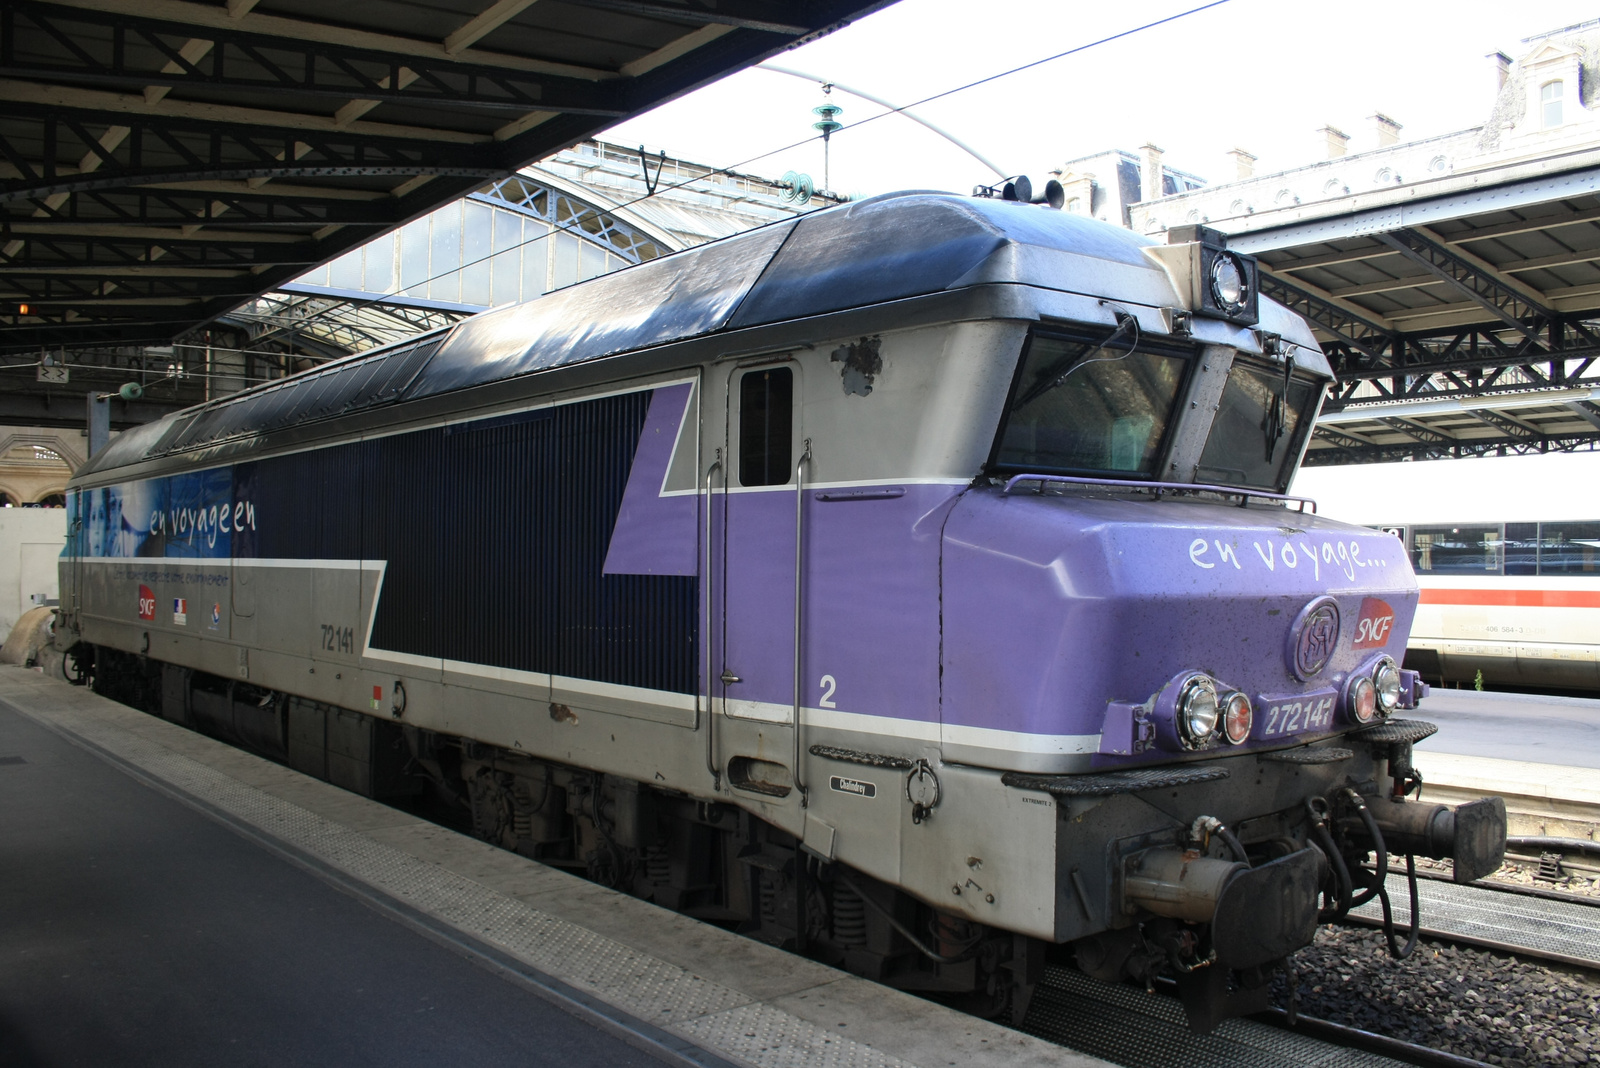 SNCF 272141 @Paris Gare de l'Est #2